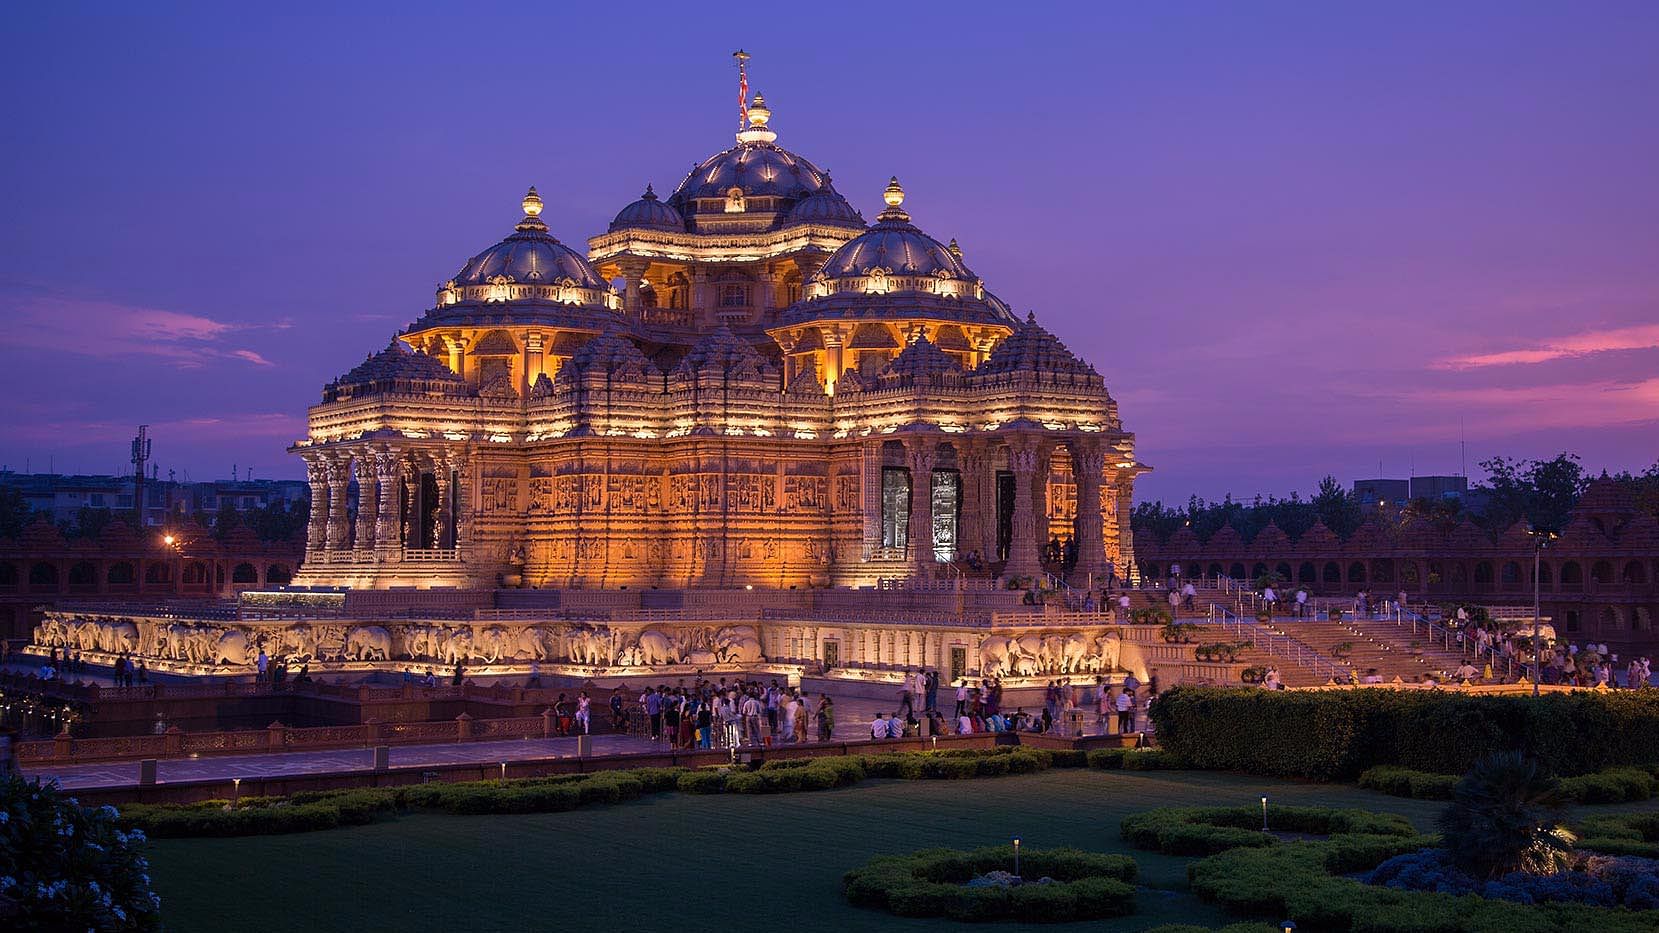 The Akshardham Temple in Delhi.